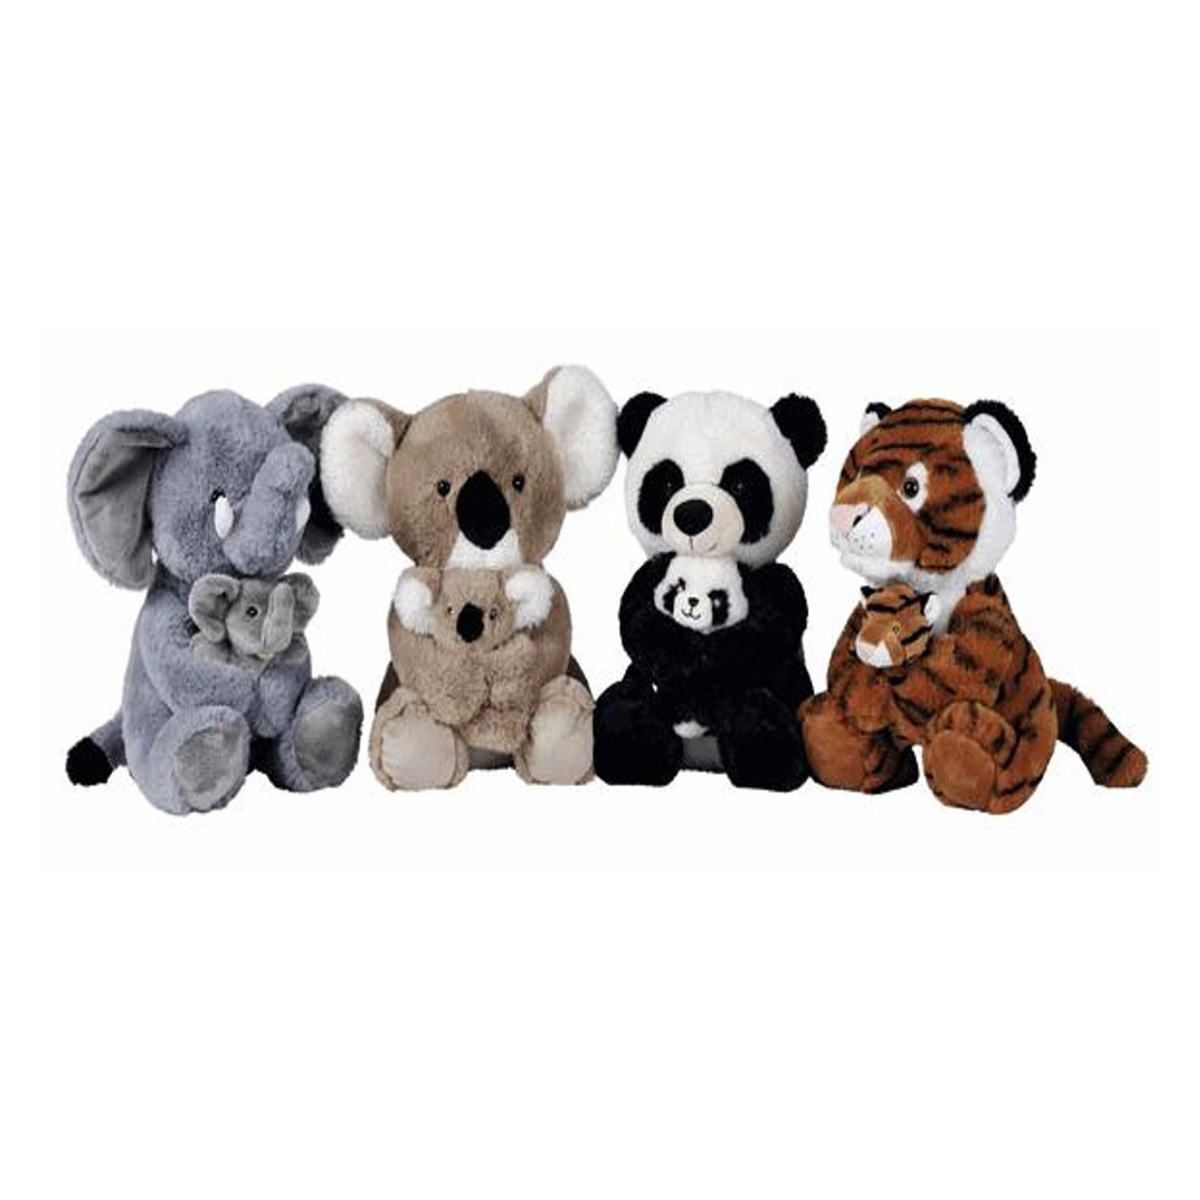 Nicotoy Panda, Koala, Tiger, Elephant Plush & Soft Toys, Assorted, 6305851124